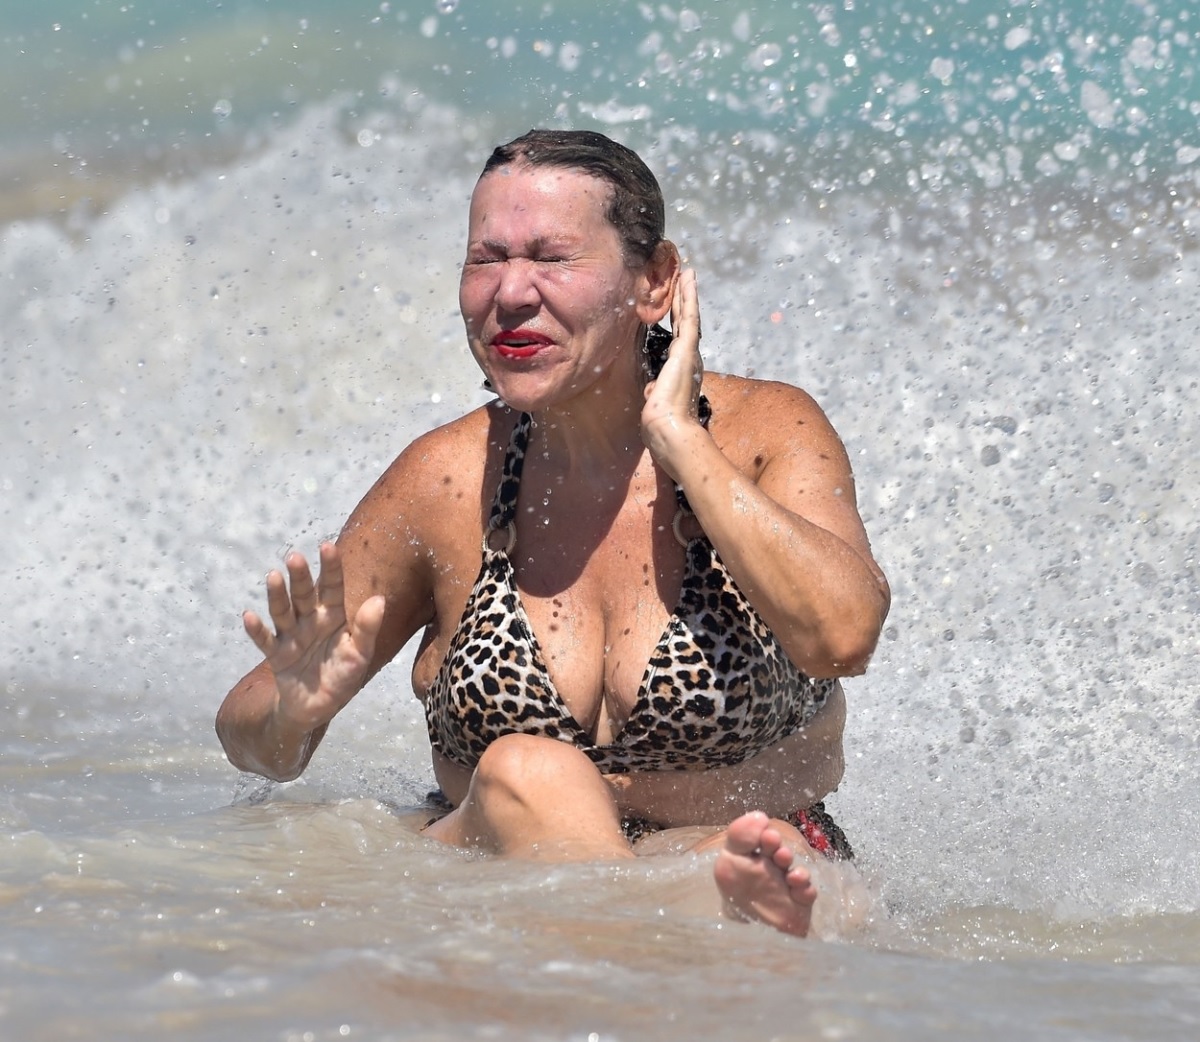 Tina Malone în timp ce se distrează în valurile agitate în timpul vacanței sale din Spania